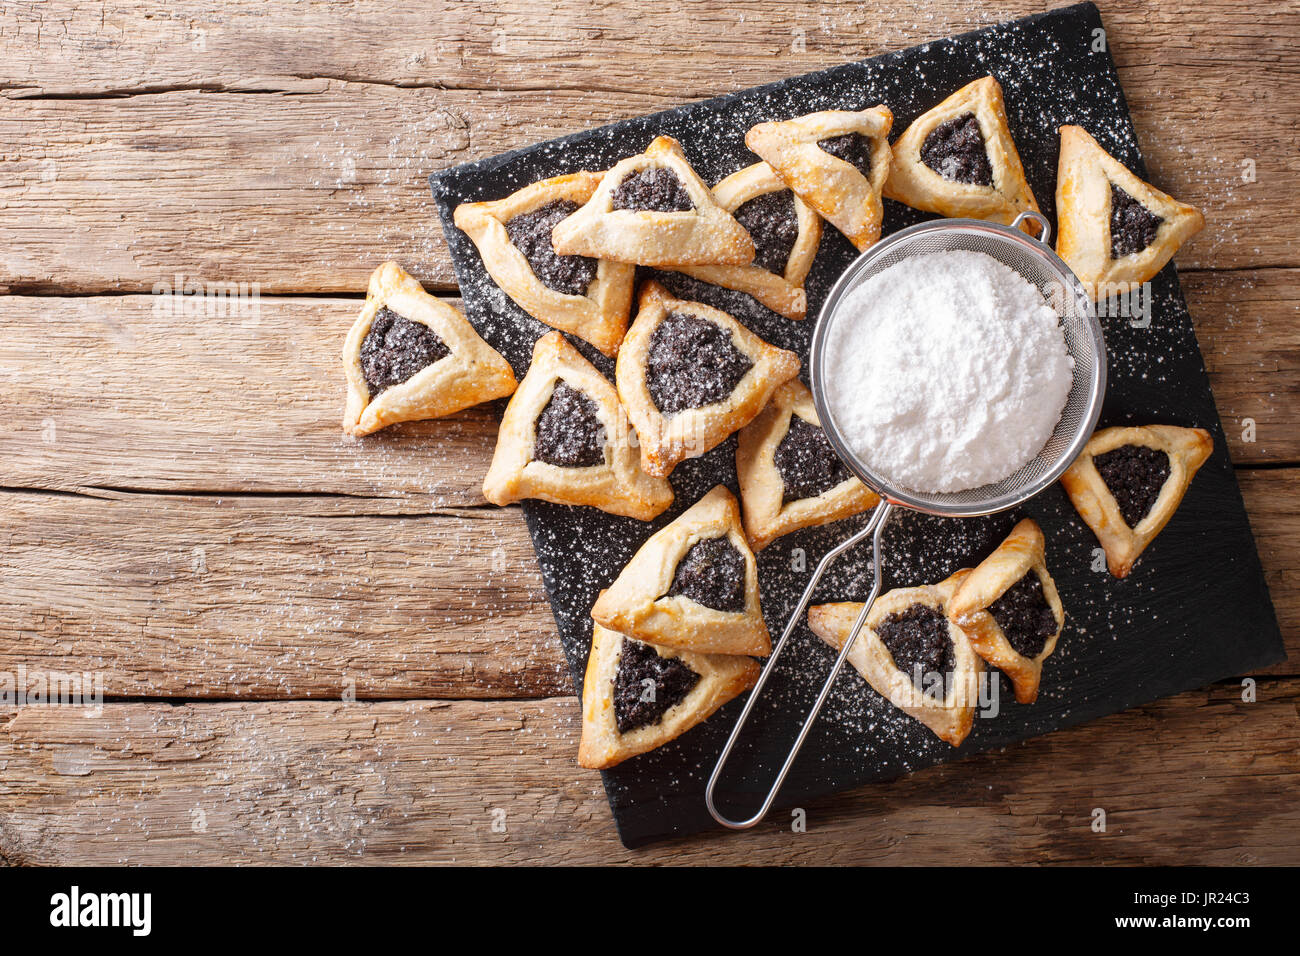 Hamentashen biscotti di forma triangolare con i semi di papavero per la festa di Purim holiday close-up sul tavolo. vista orizzontale dal di sopra Foto Stock